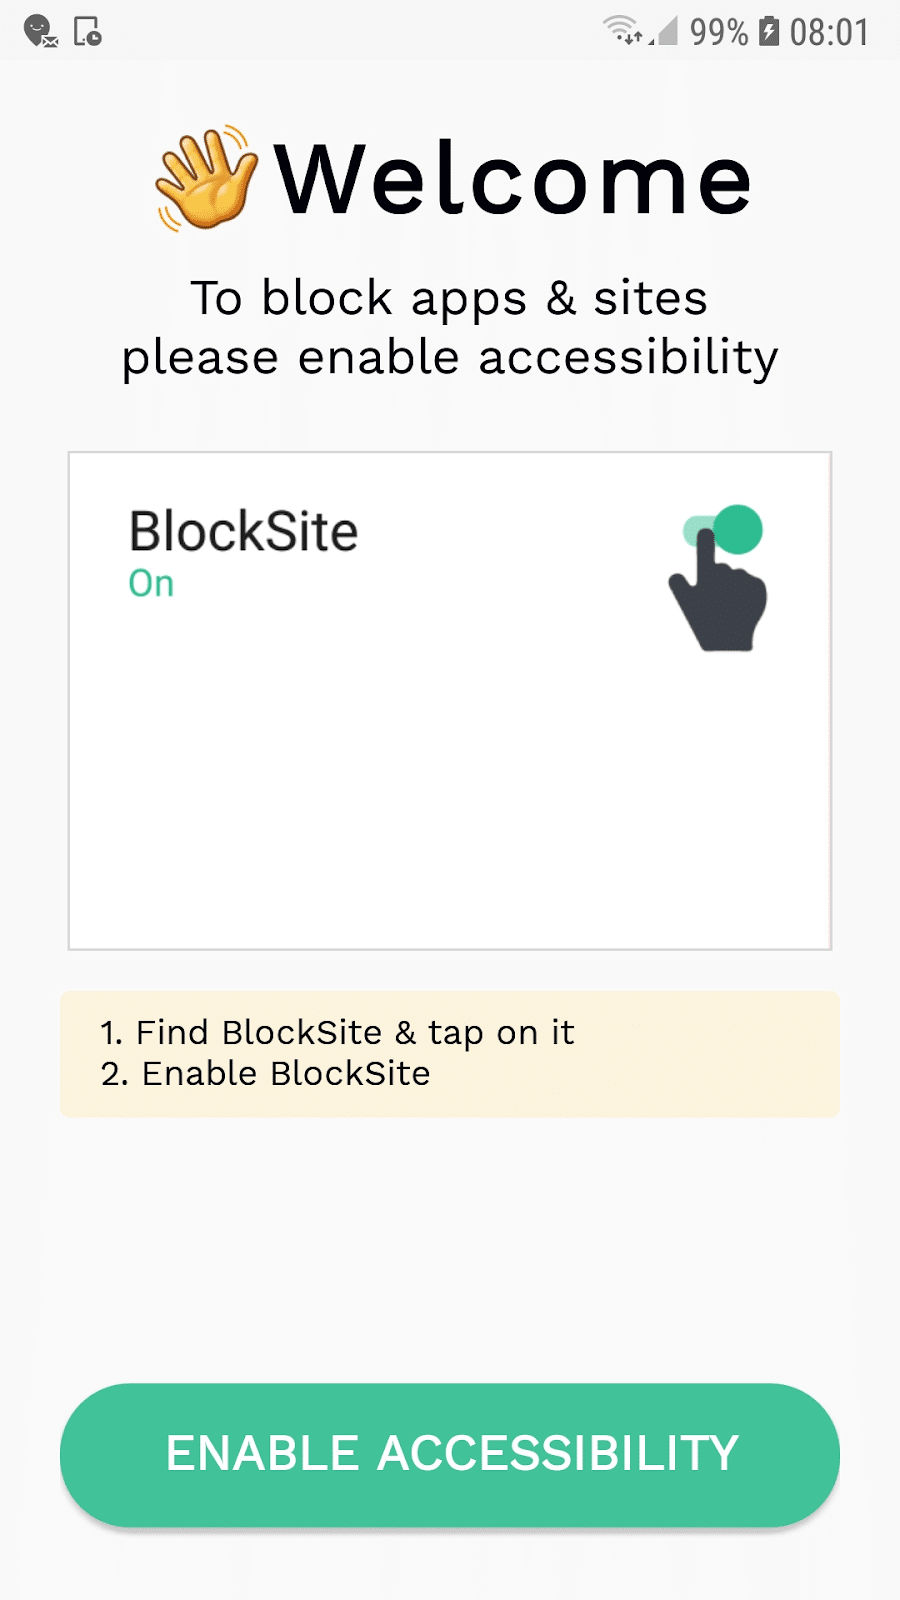 Accesibilidad de la aplicación BlockSite